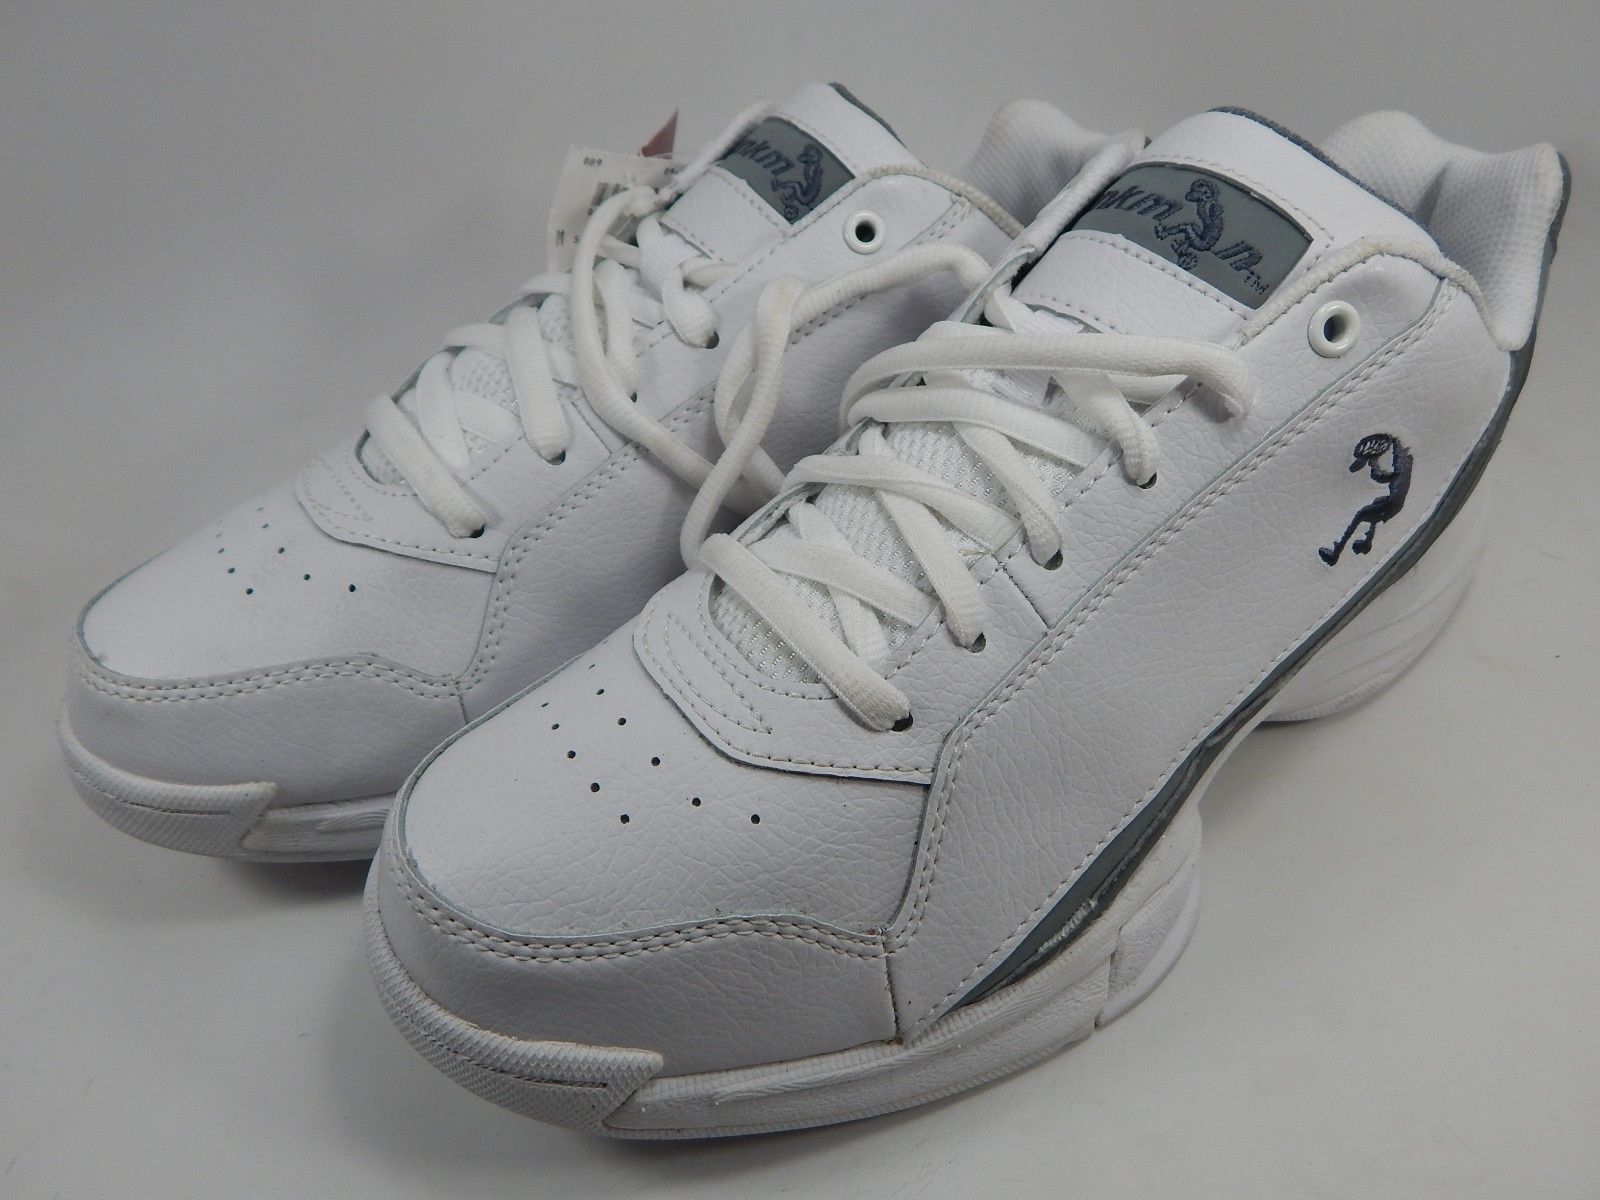 Shaq Dunkman Men's Basketball Sneakers Shoes Size US 9 M (D) EU 42 ...